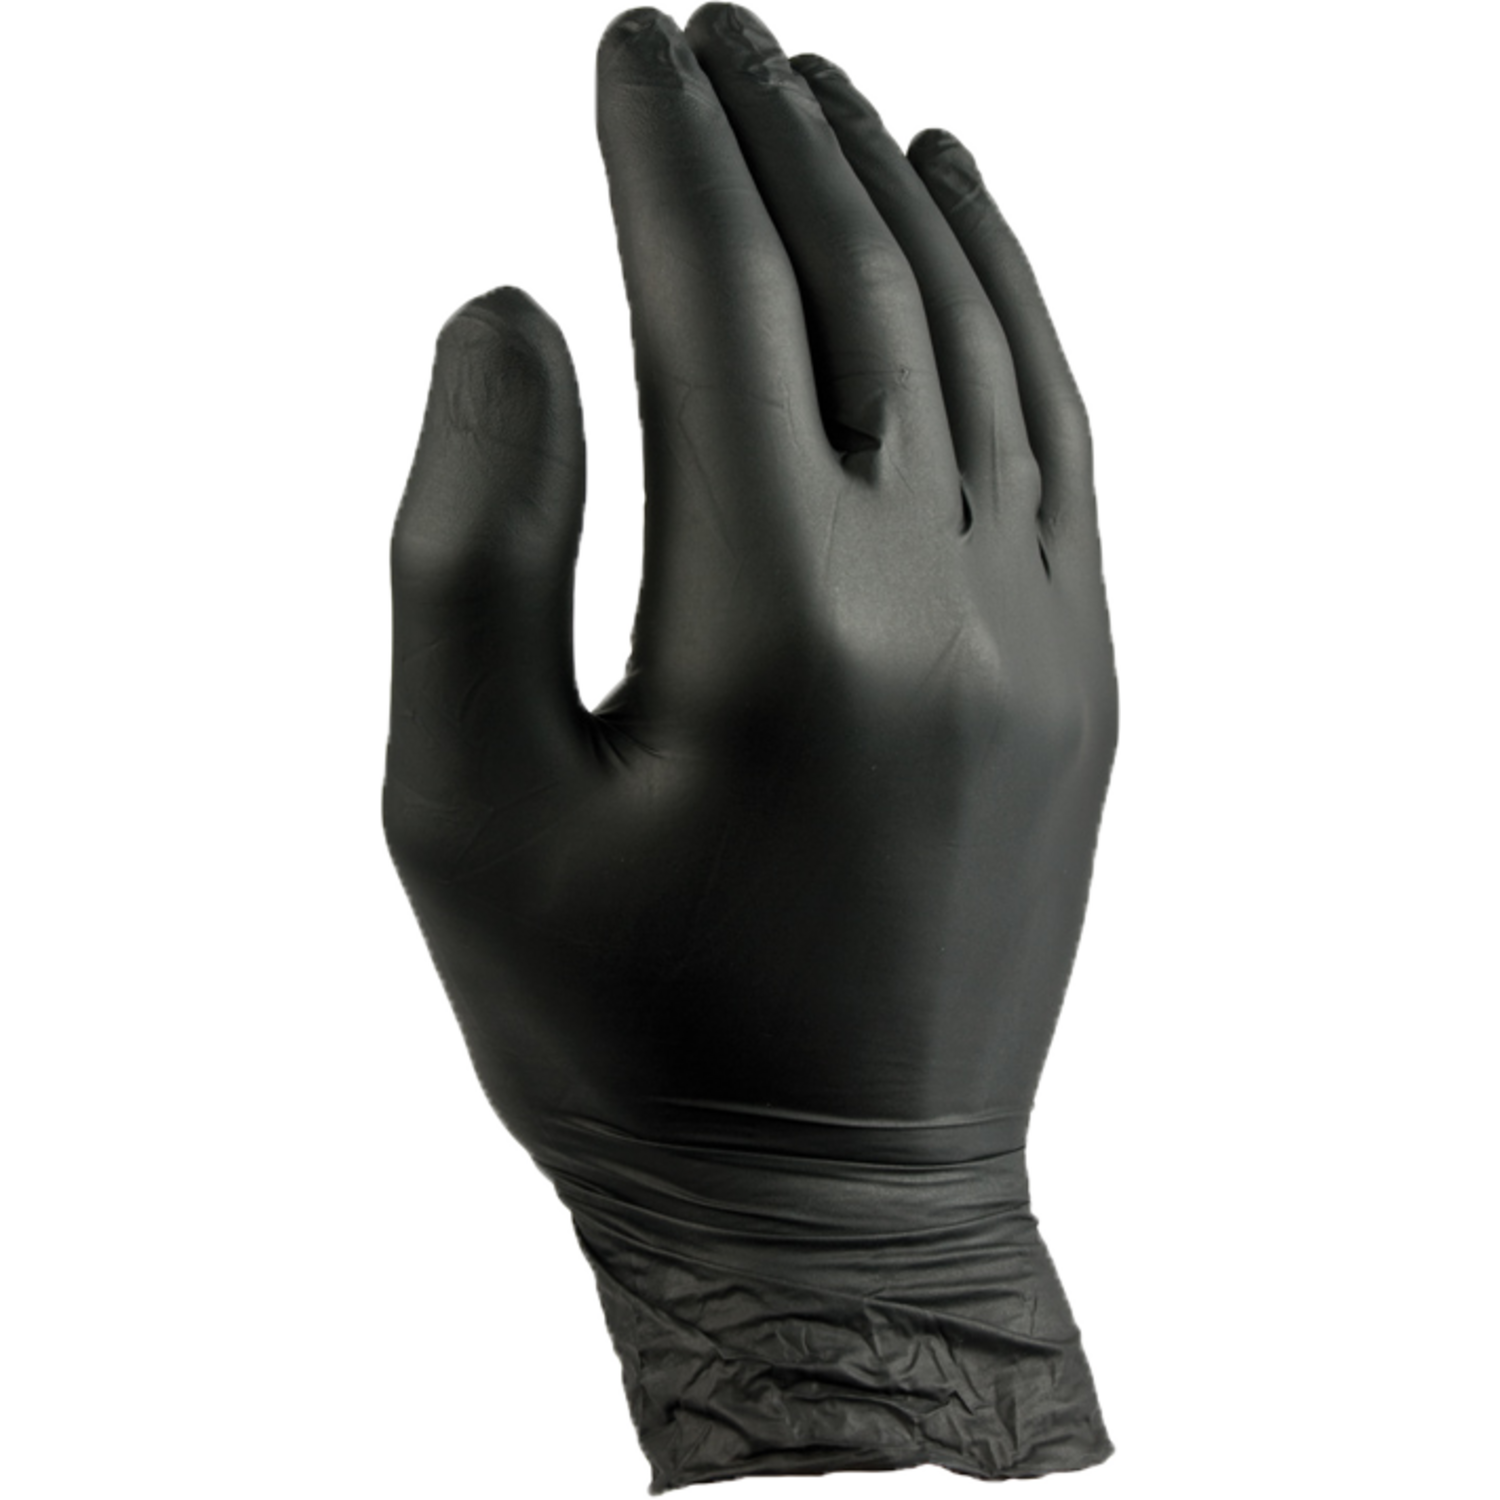 ComFort Handschoen, Nitril, ongepoederd, xL, zwart 1